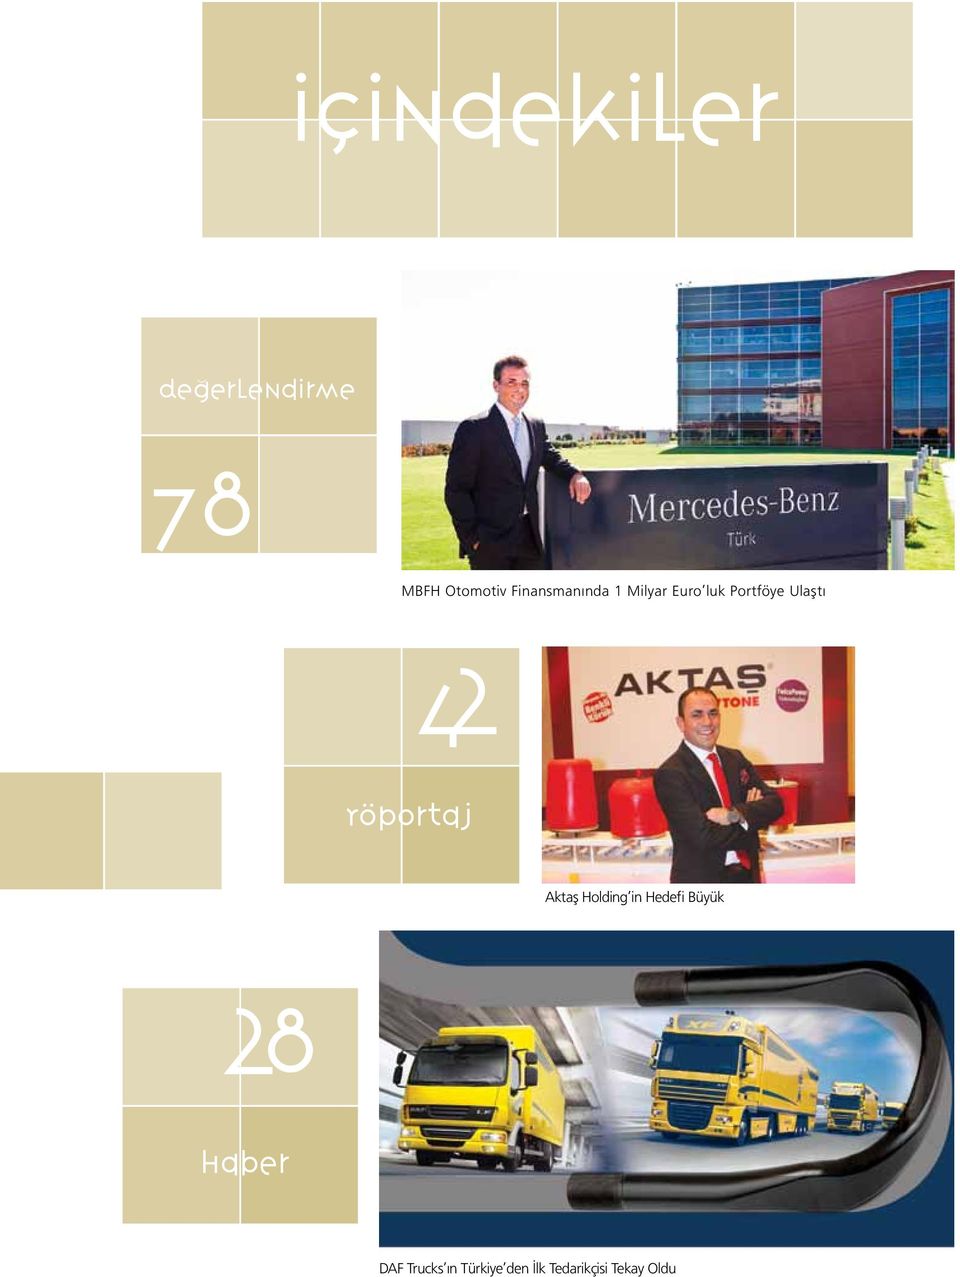 42 Röportaj Aktaş Holding in Hedefi Büyük 28